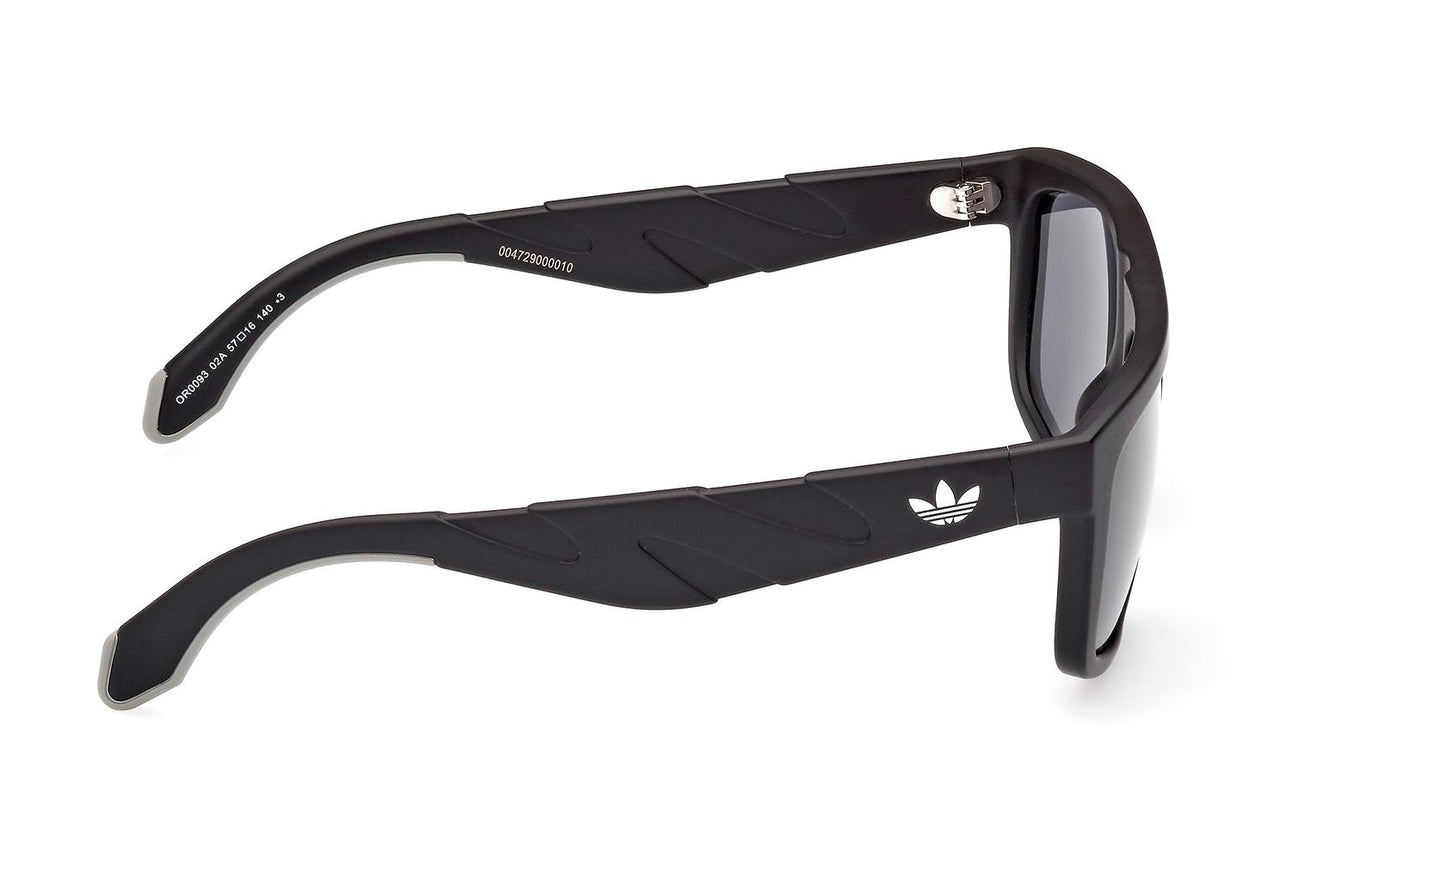 Adidas Originals Sunglasses OR0093 02A